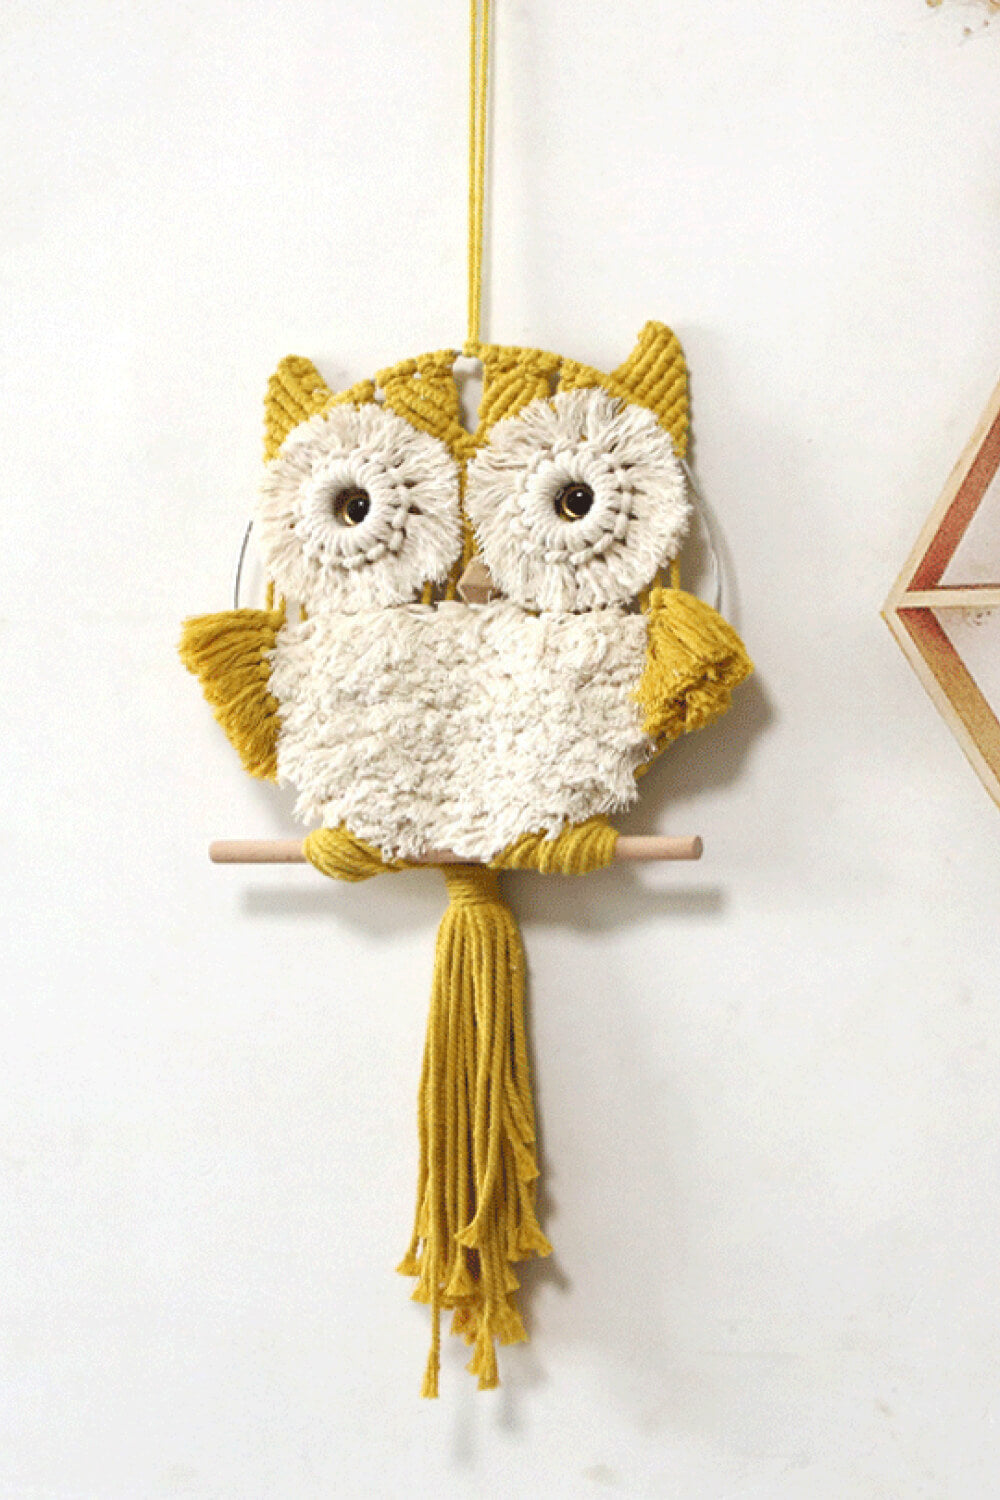 Macrame Owl Hand-Woven Tassel Wall Hanging Home Art Decor